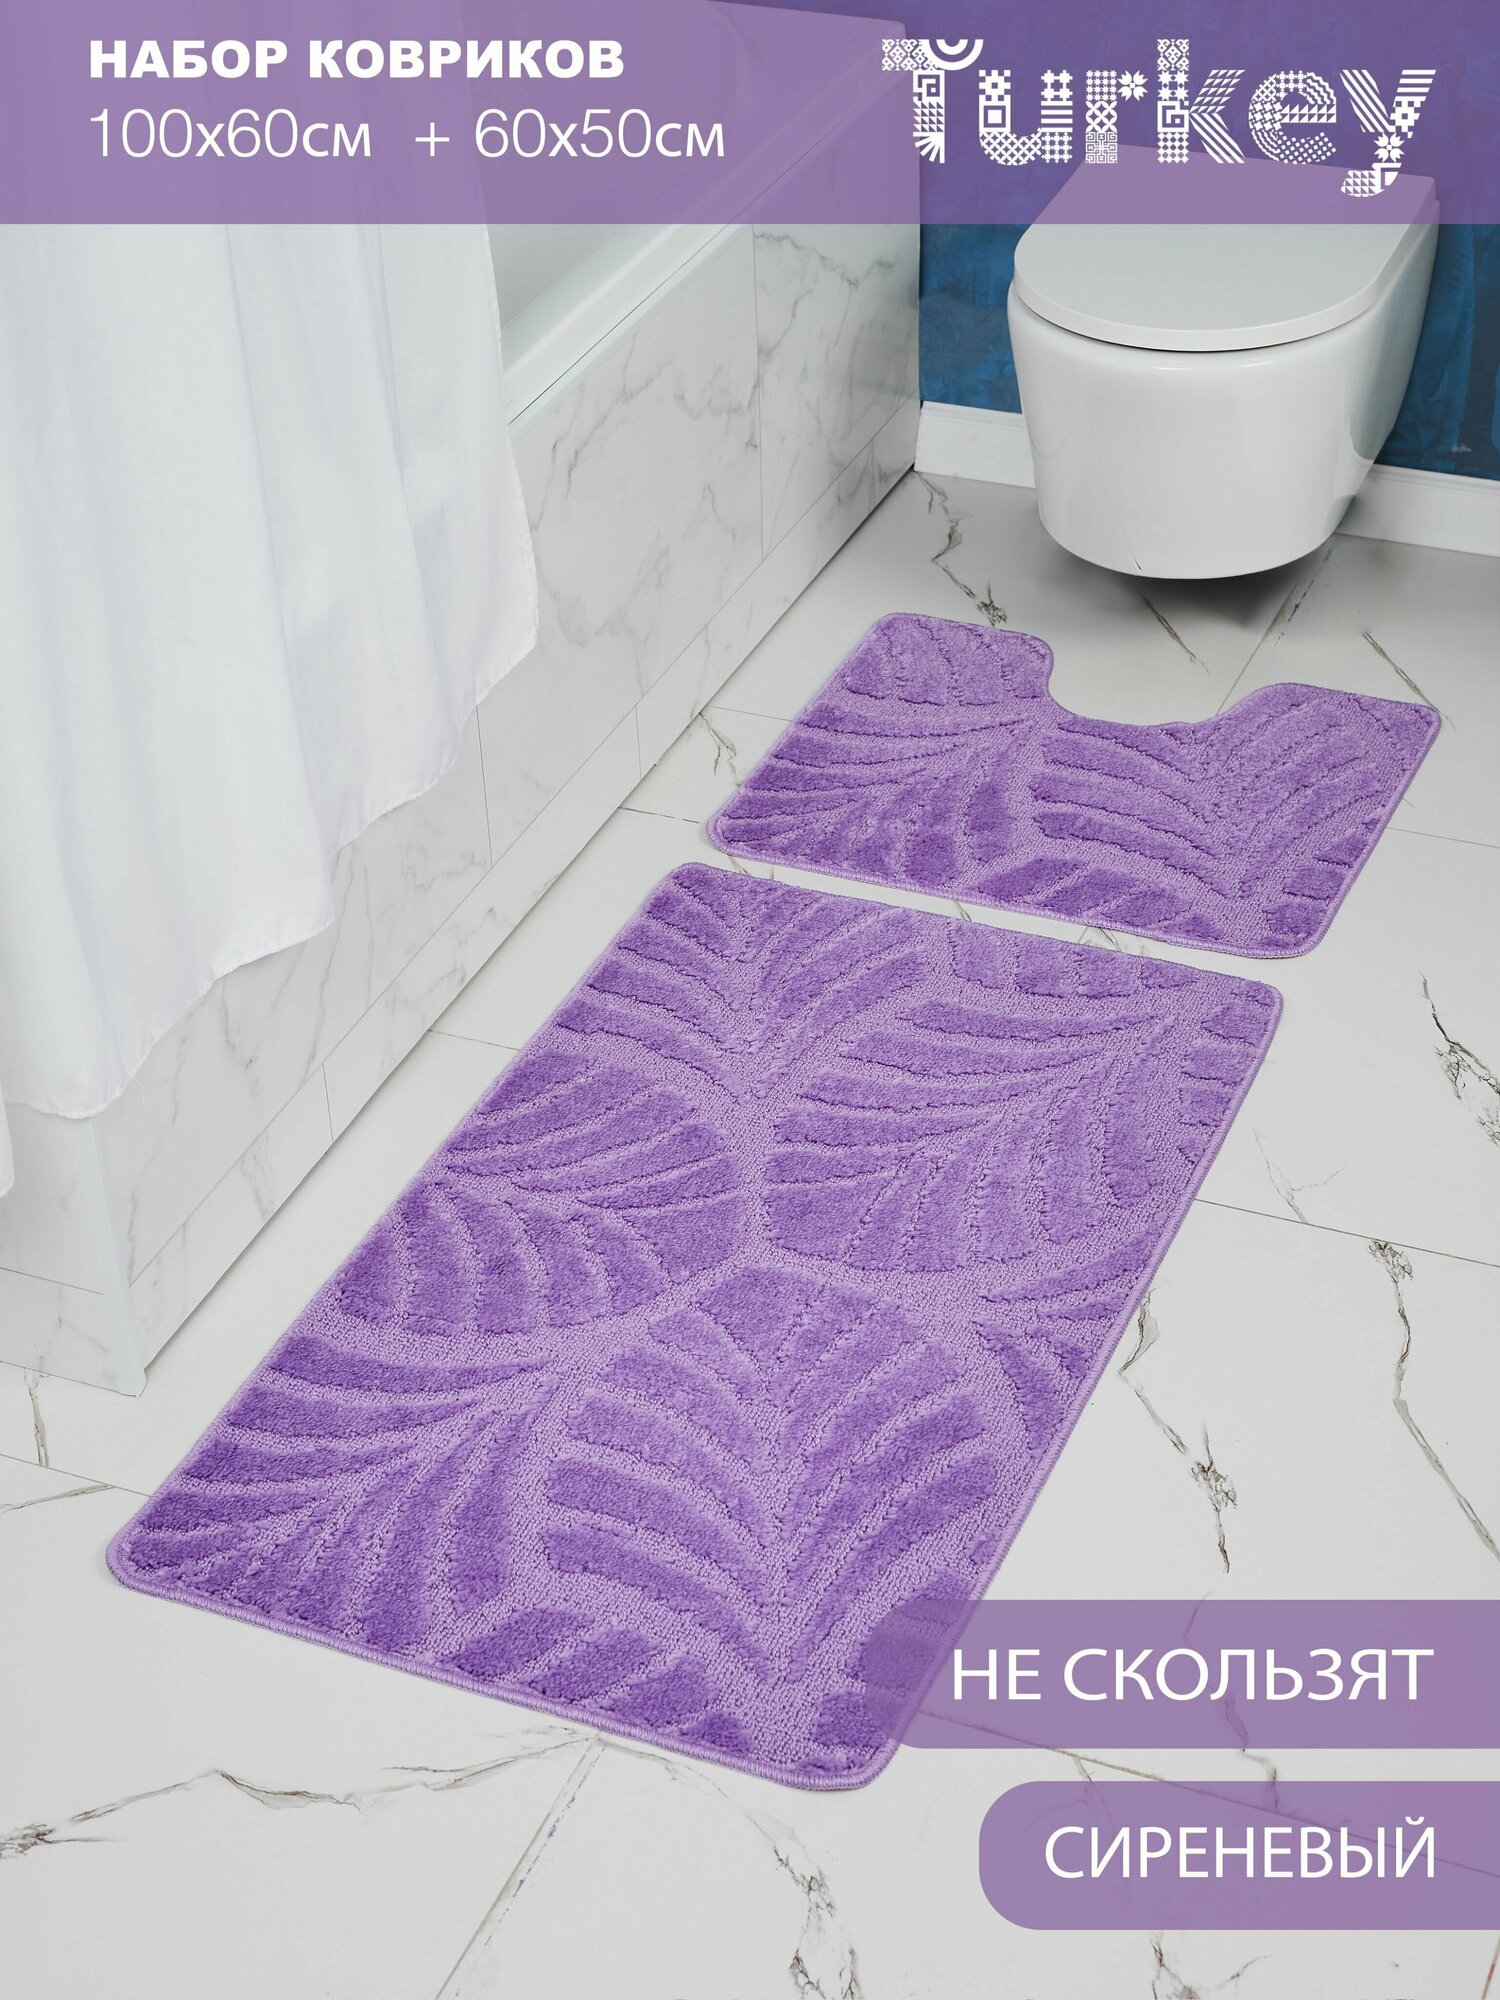 Набор противоскользящих ковриков для ванной и туалета, Solin 100*60+50*60, 2 шт.